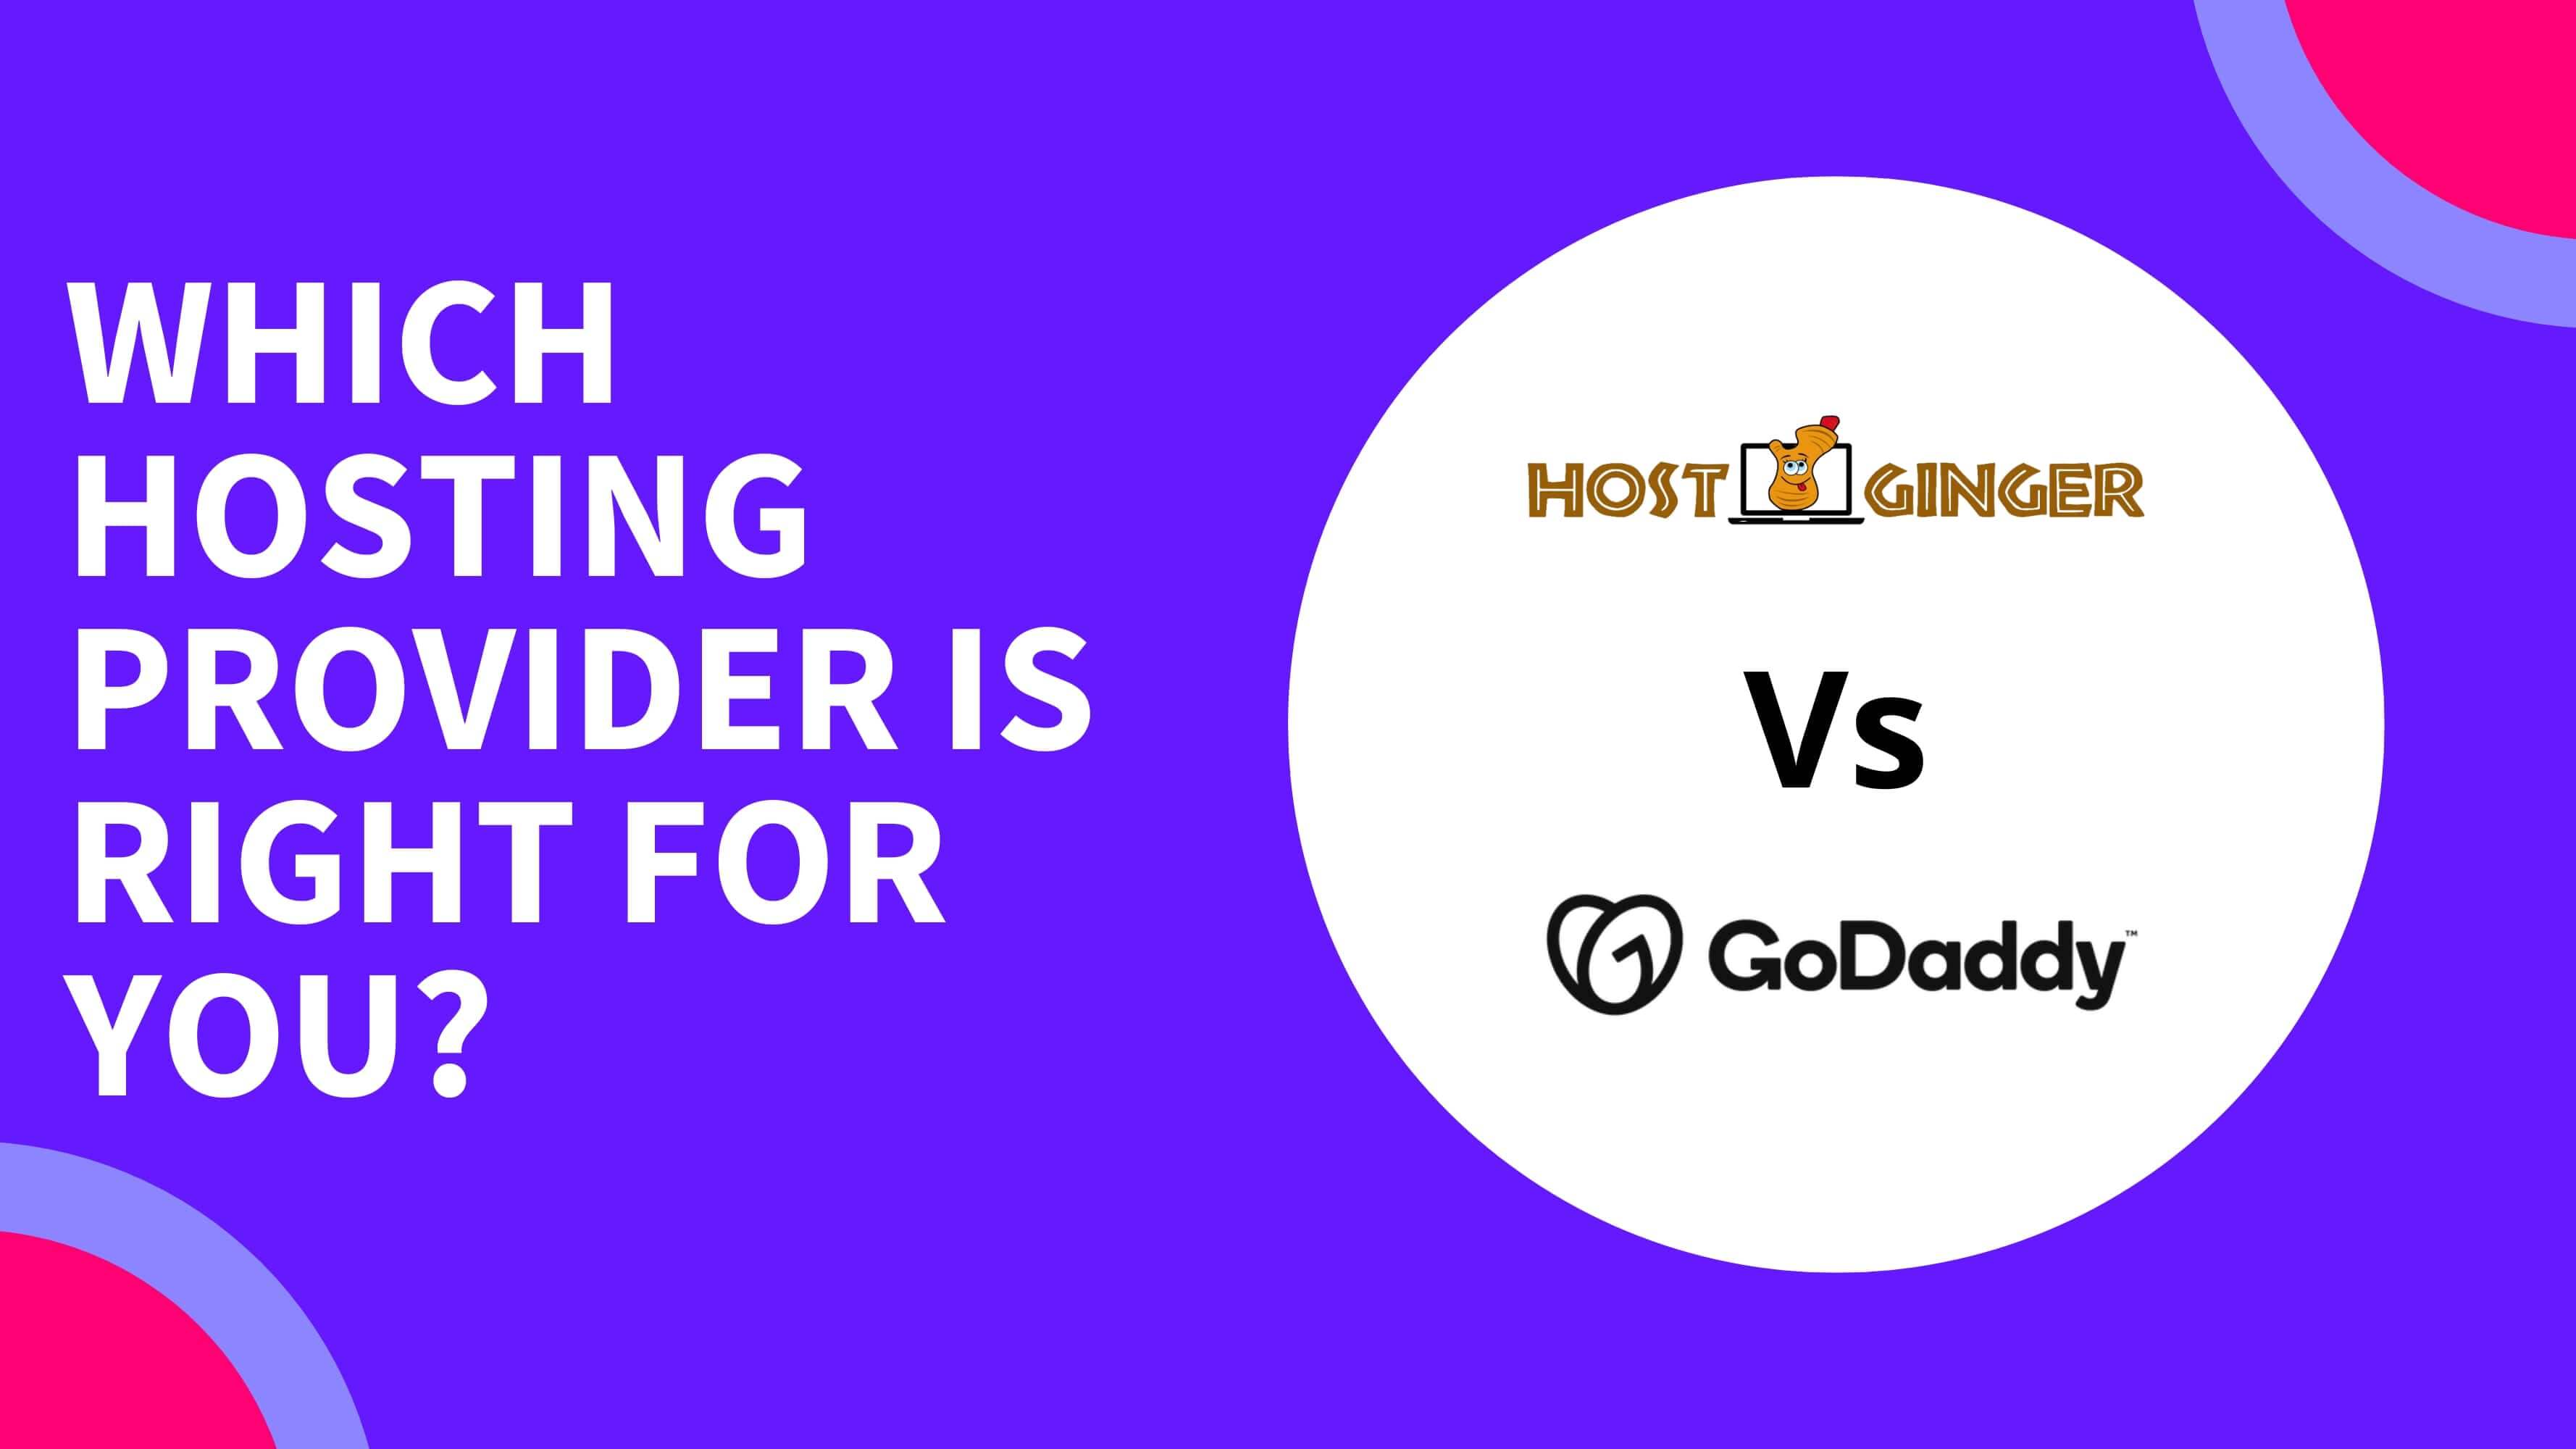 Hostginger vs. GoDaddy